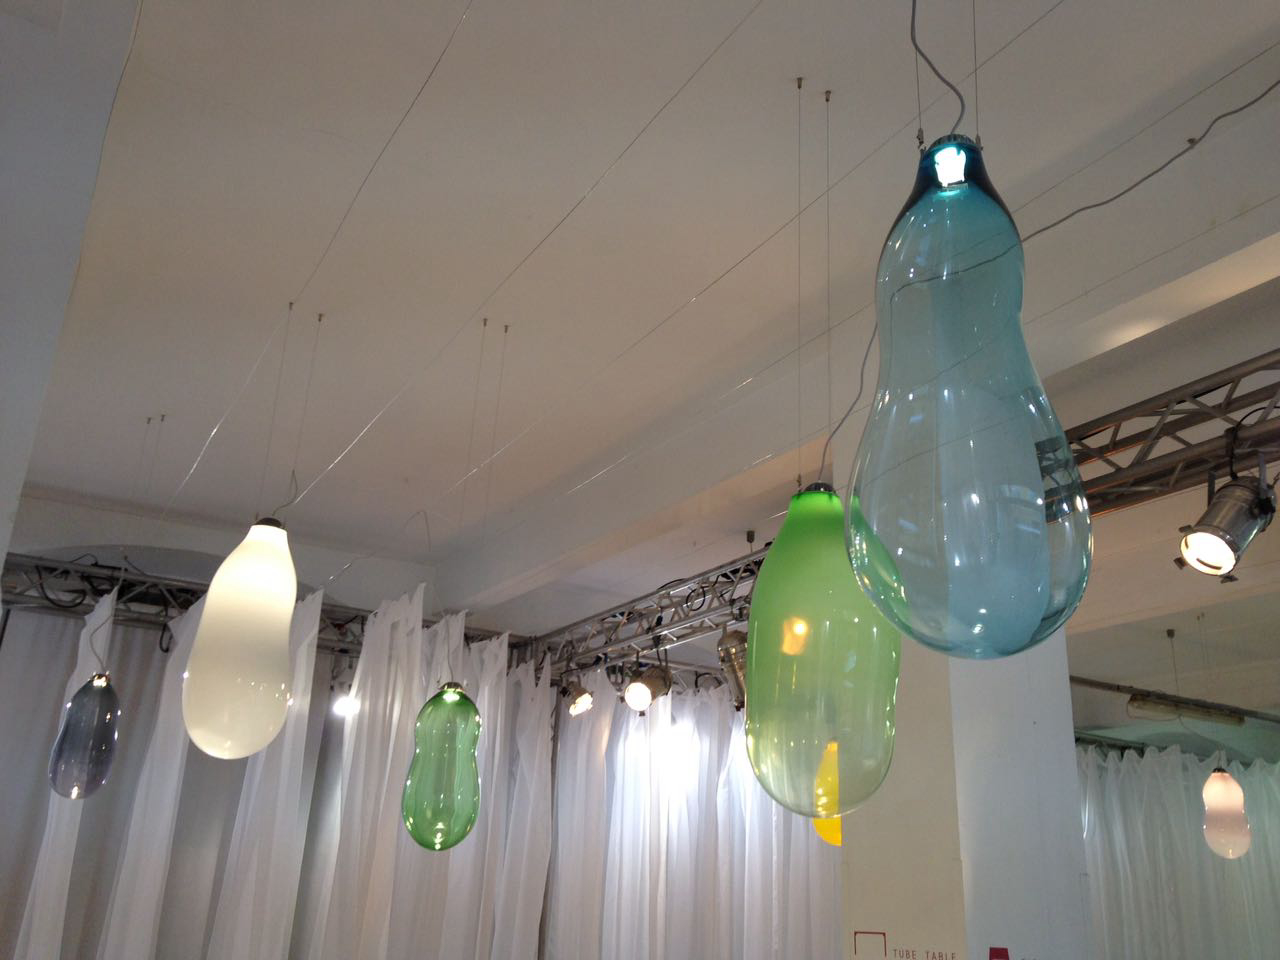 Luminárias que parecem balões de festa, feitas em vidro. Foto: Luan Galani / Gazeta do Povo